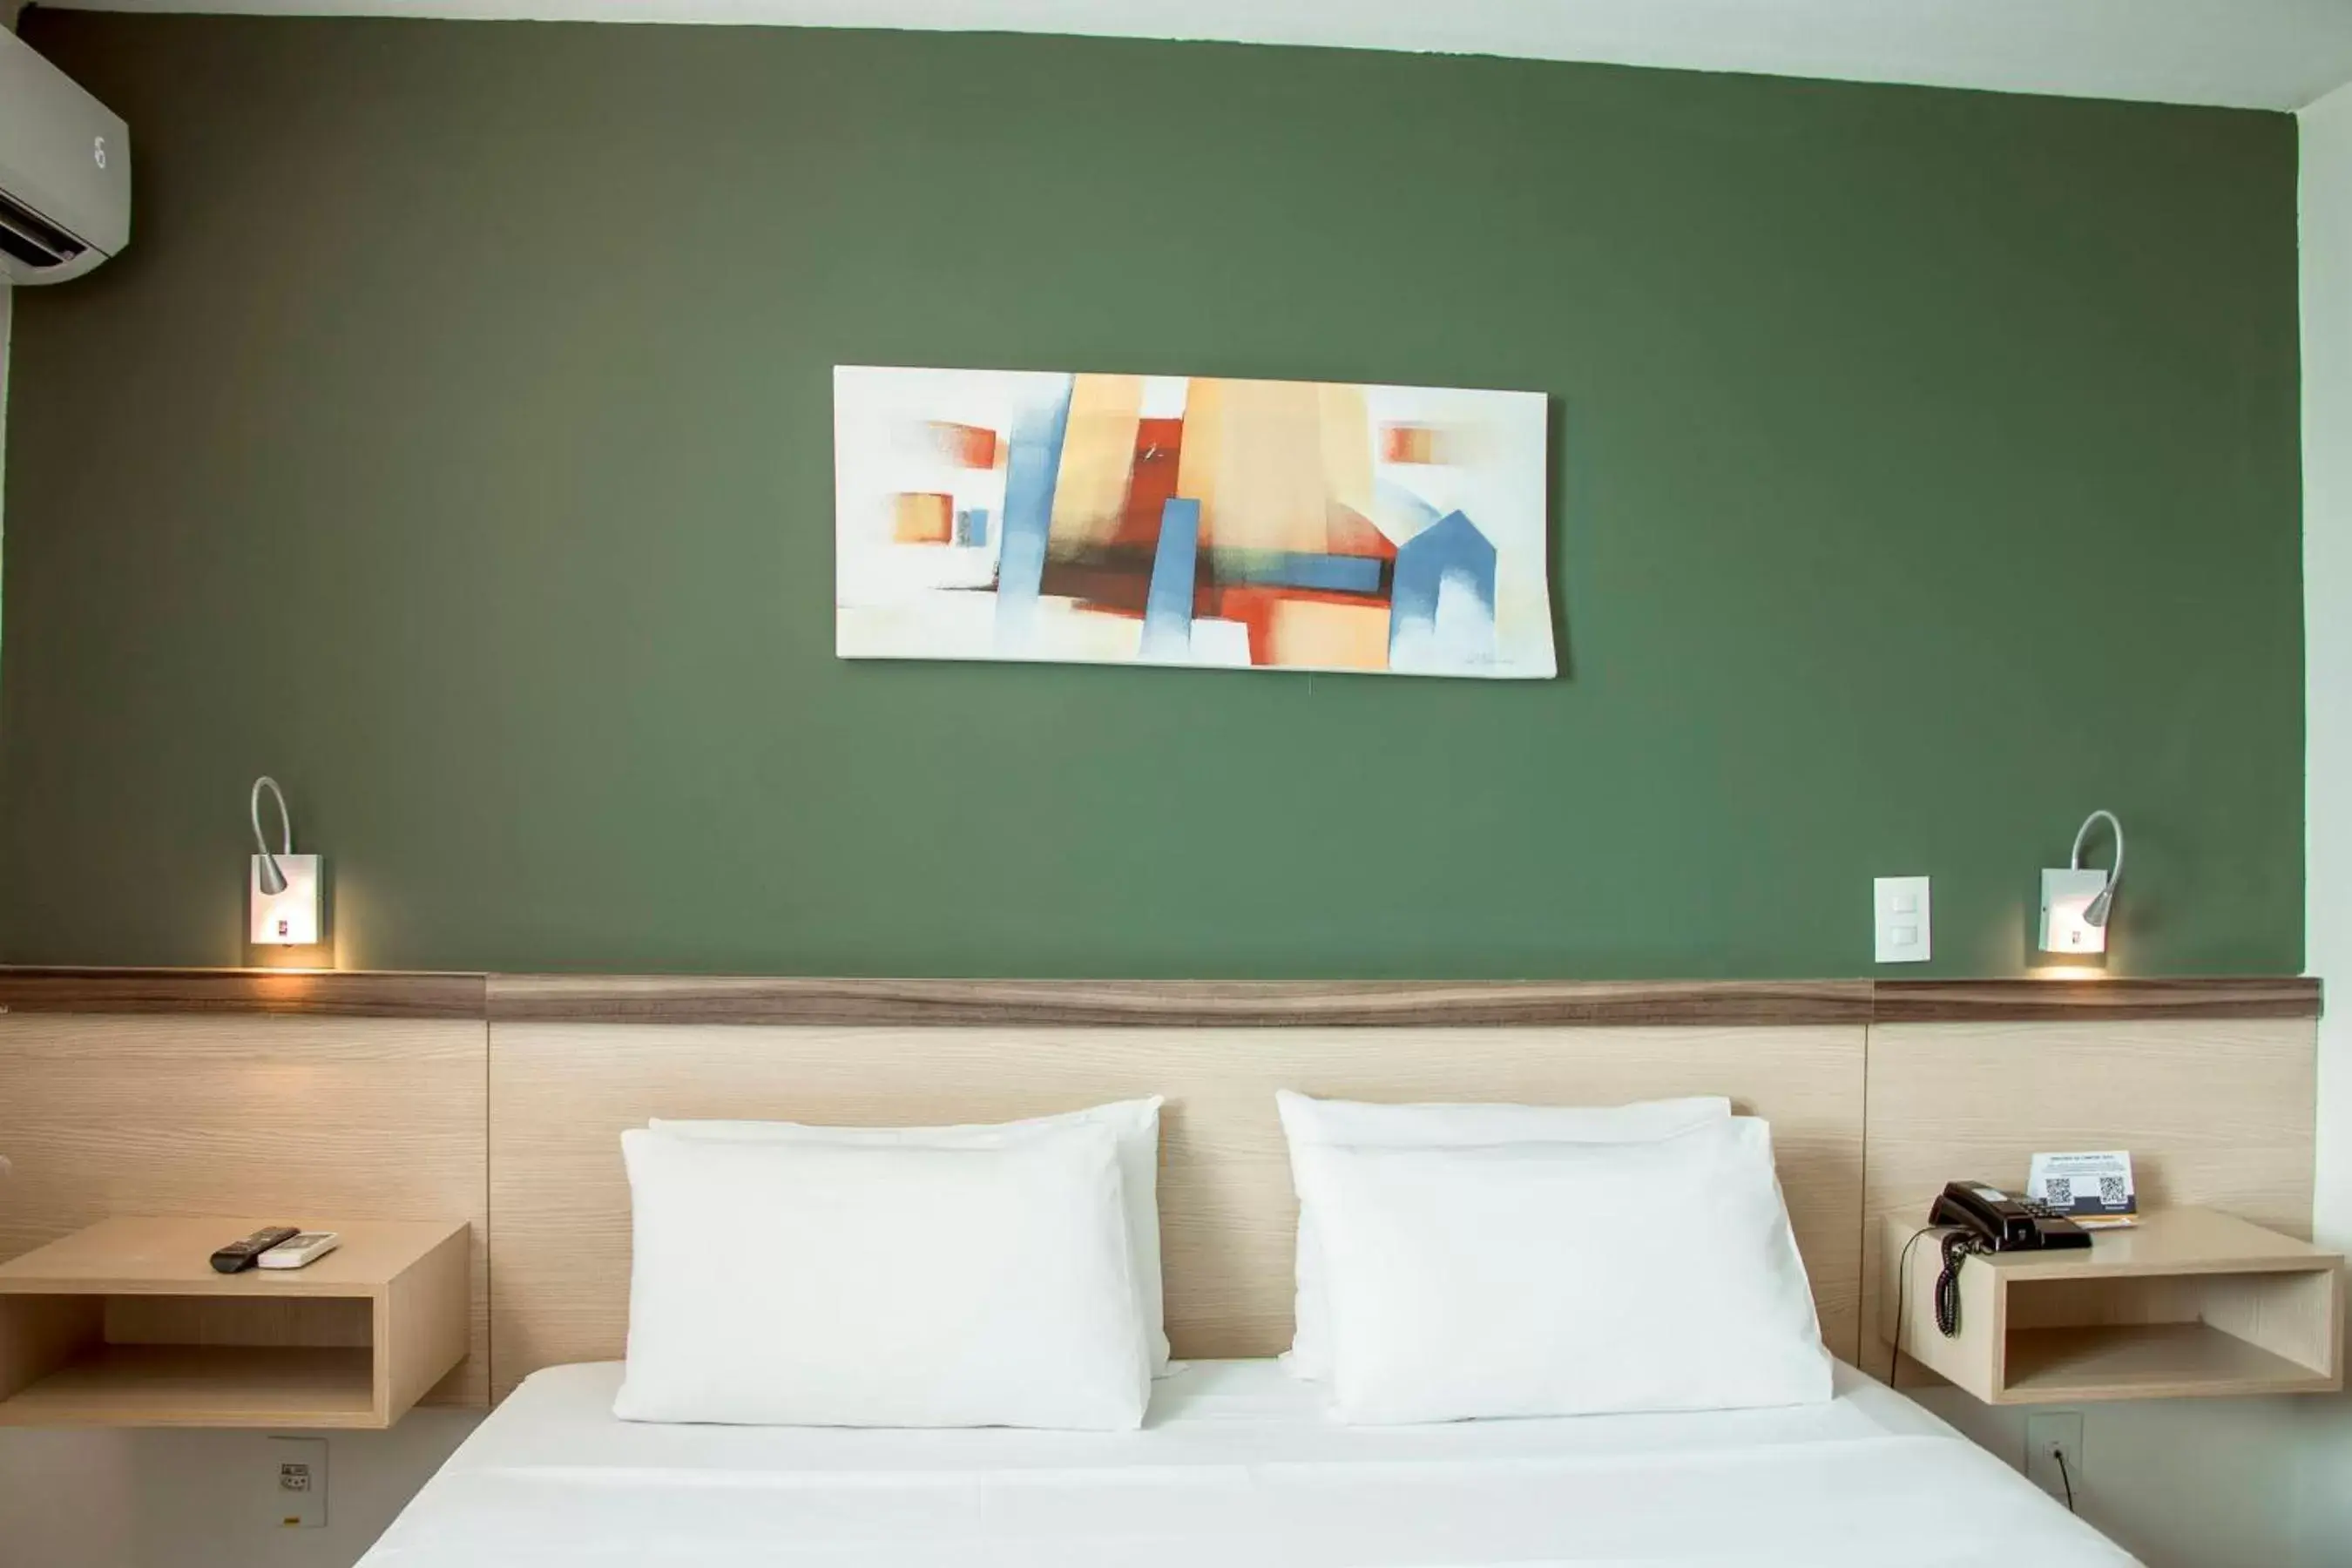 Bedroom, Bed in Comfort Hotel Campos dos Goytacazes